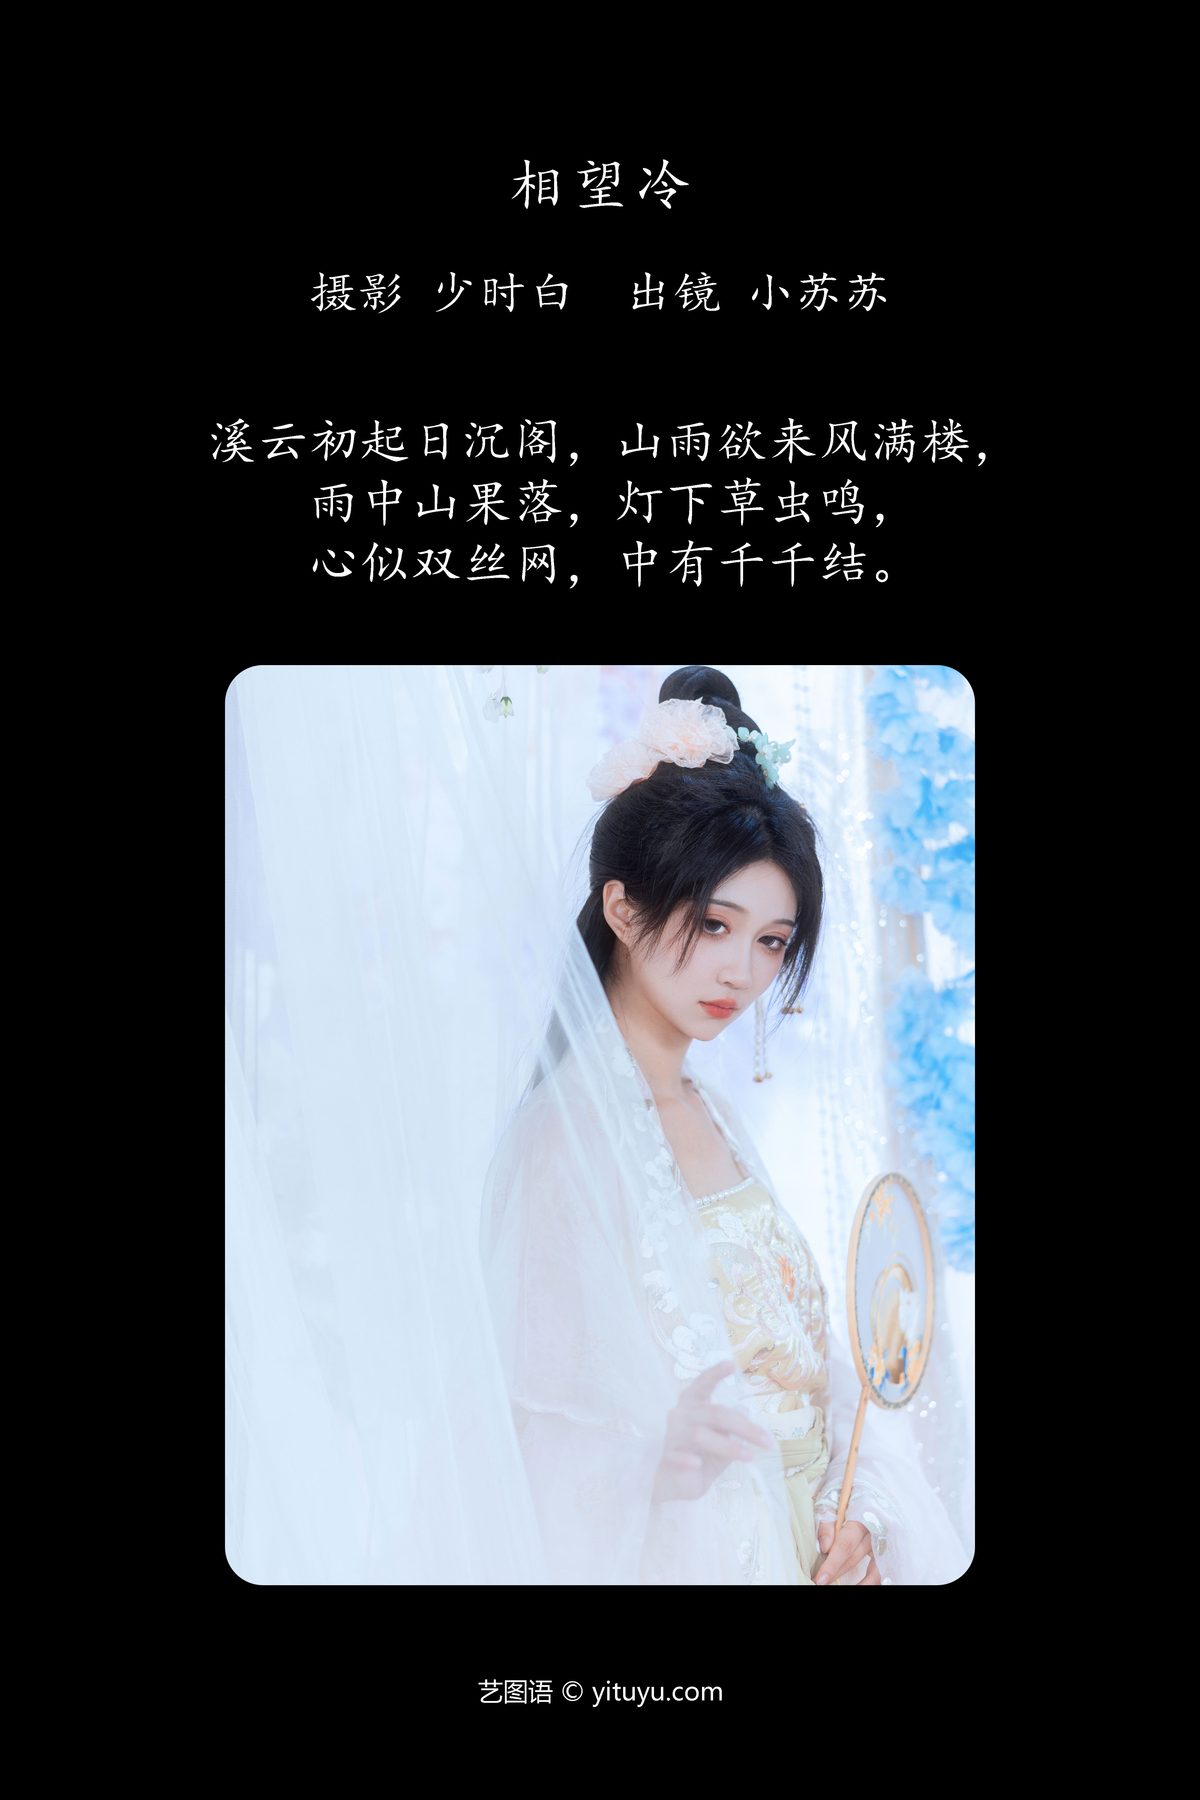 YiTuYu艺图语 Vol 4320 Qi Luo Sheng De Xiao Su Su 0001 3618907999.jpg